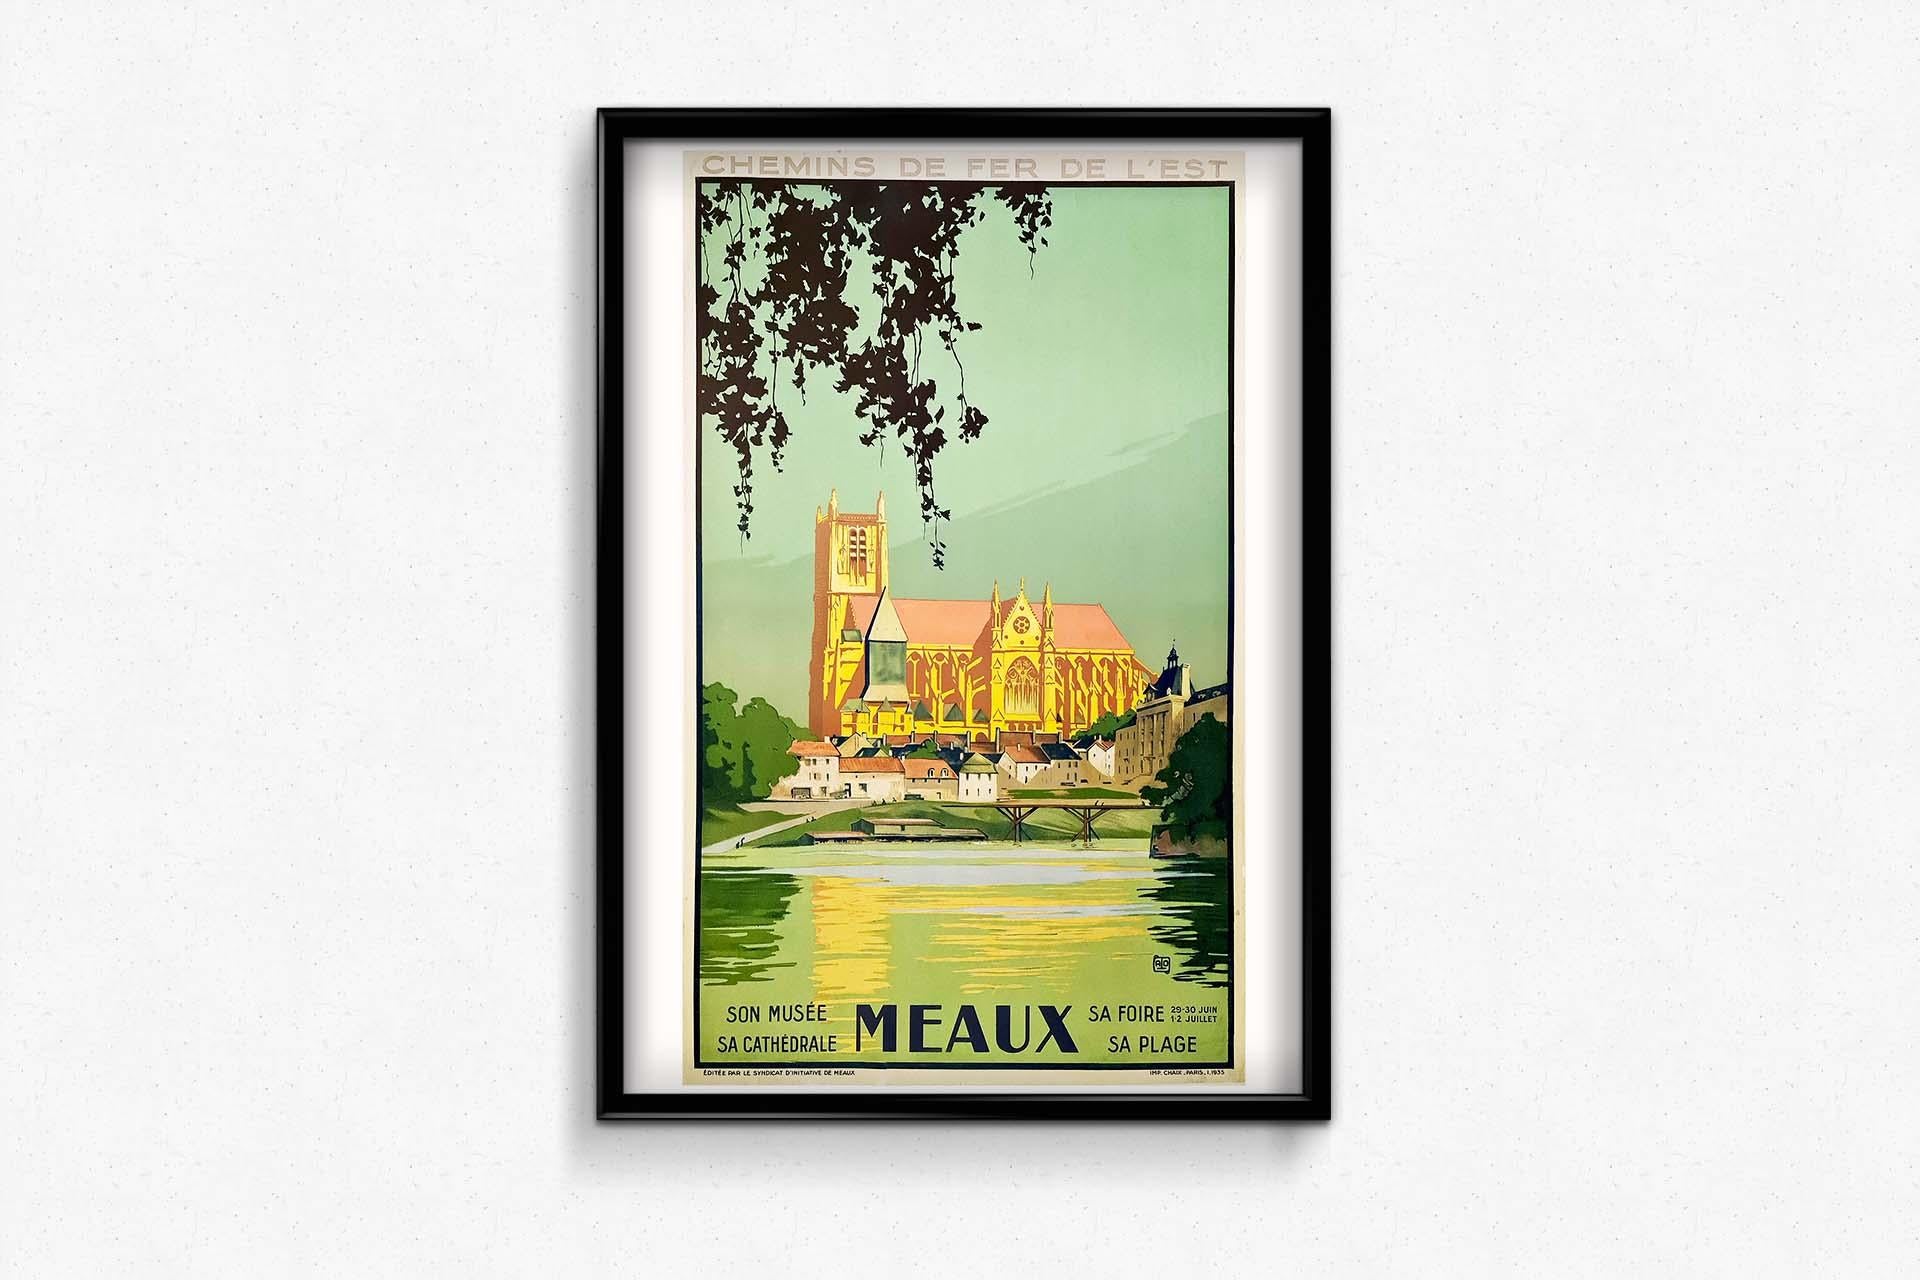 Touristisches Plakat von Meaux für den Chemin de Fer de l'Est, illustriert von Alo.
Charles-Jean Hallo ( 1882 - 1969 ), bekannt als ALO, ist ein französischer Maler, Zeichner, Illustrator, Graveur und Fotograf.

Eisenbahn - Tourismus - Seine et